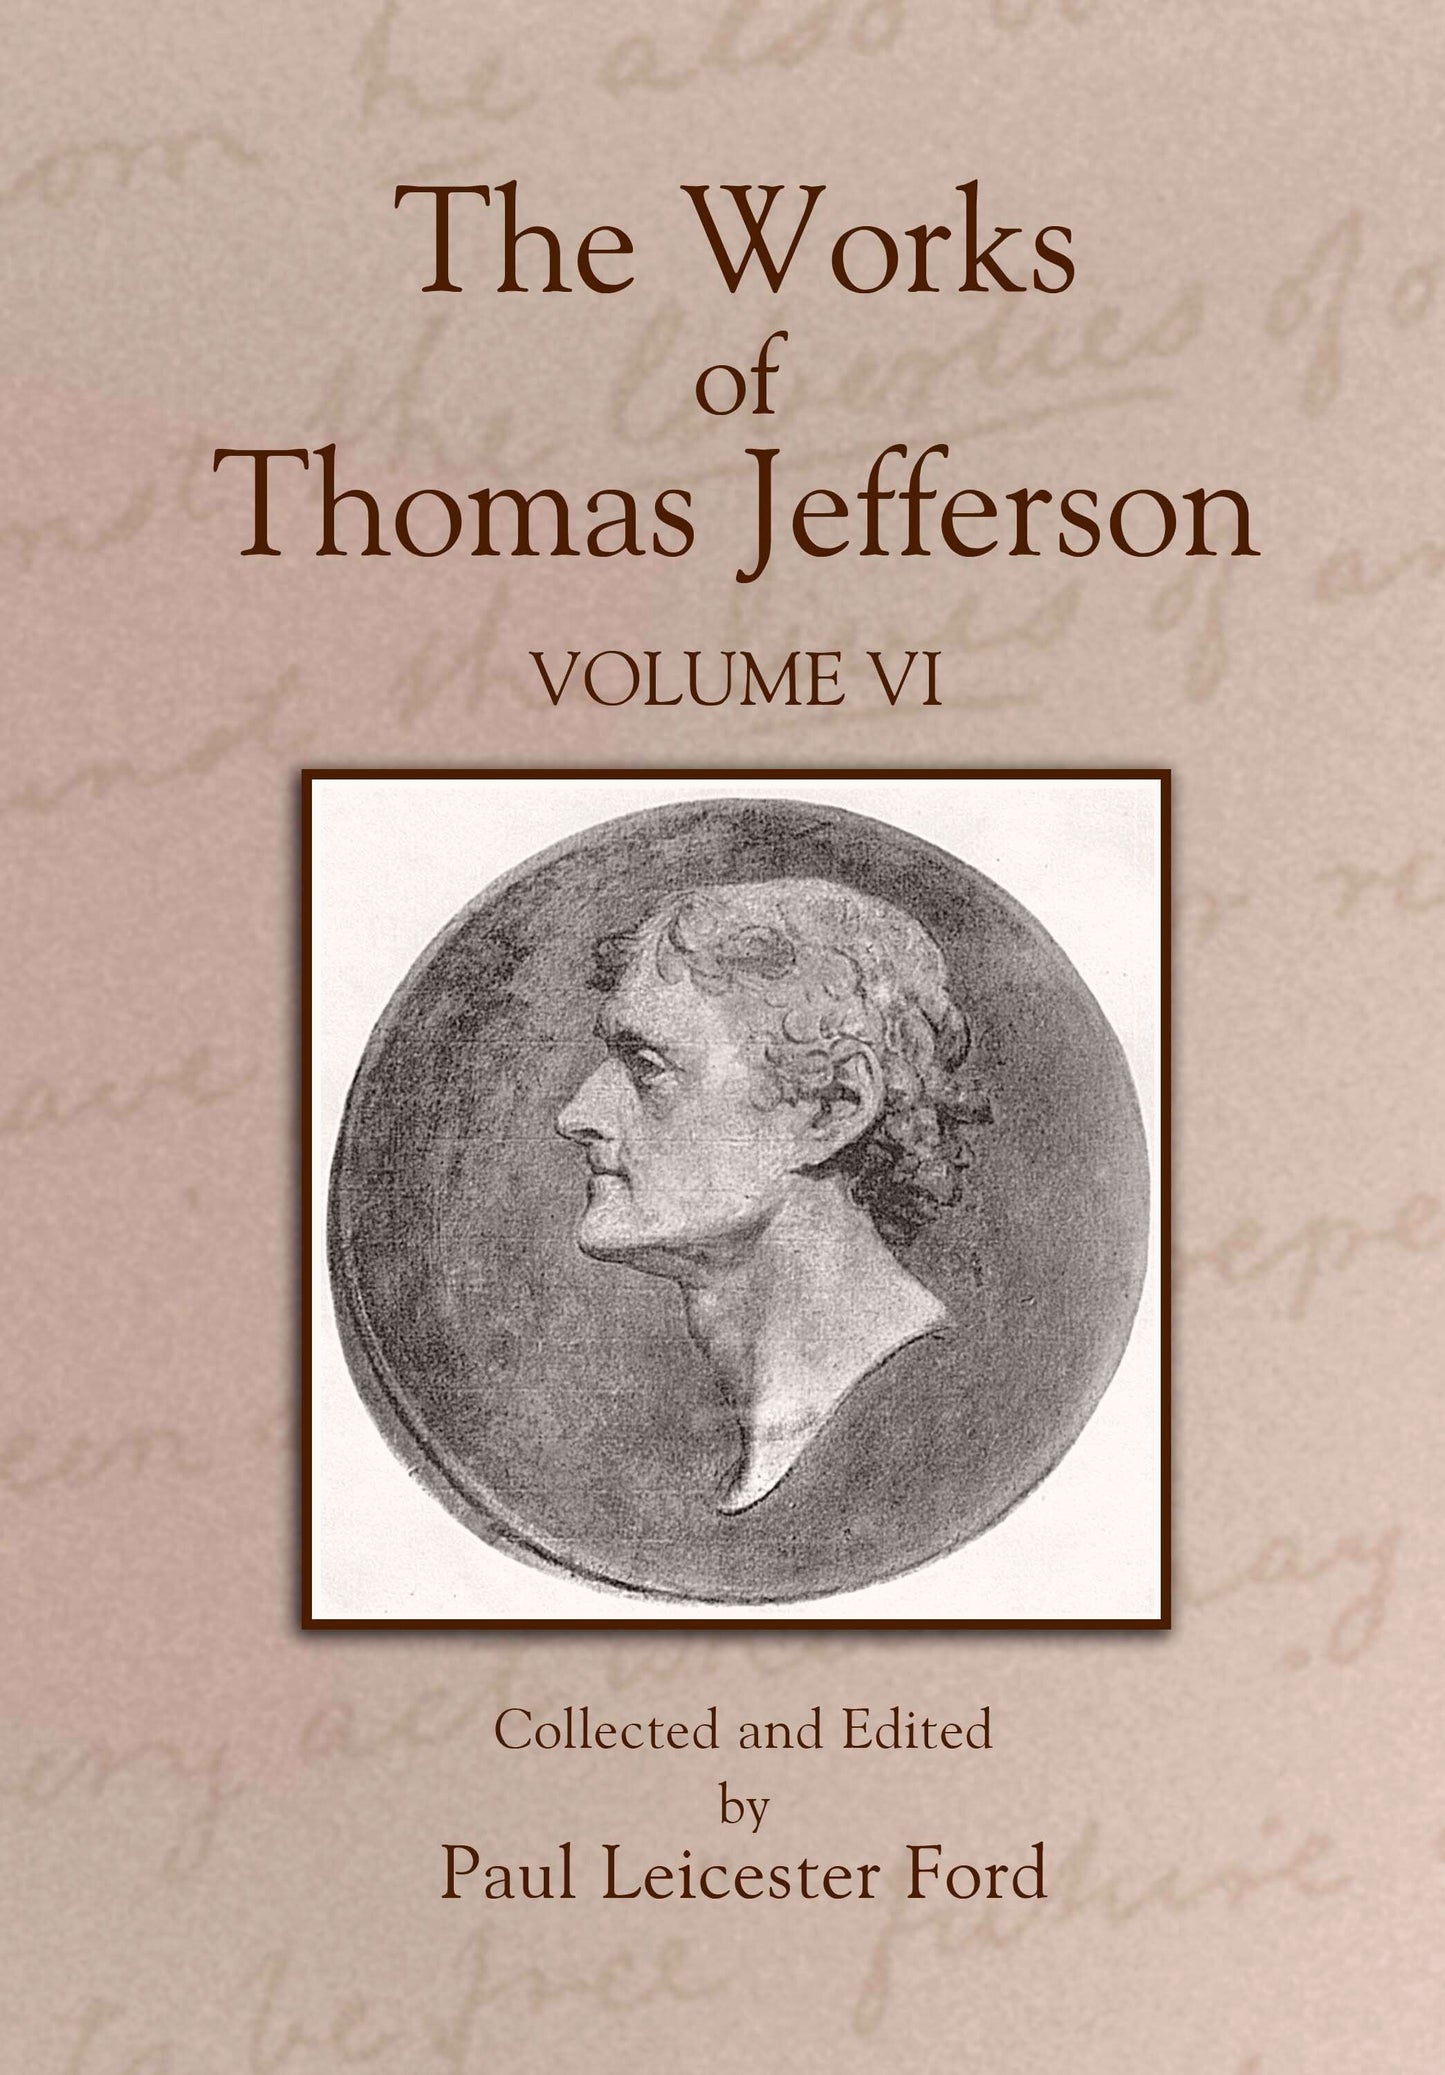 The Works of Thomas Jefferson: Volume VI